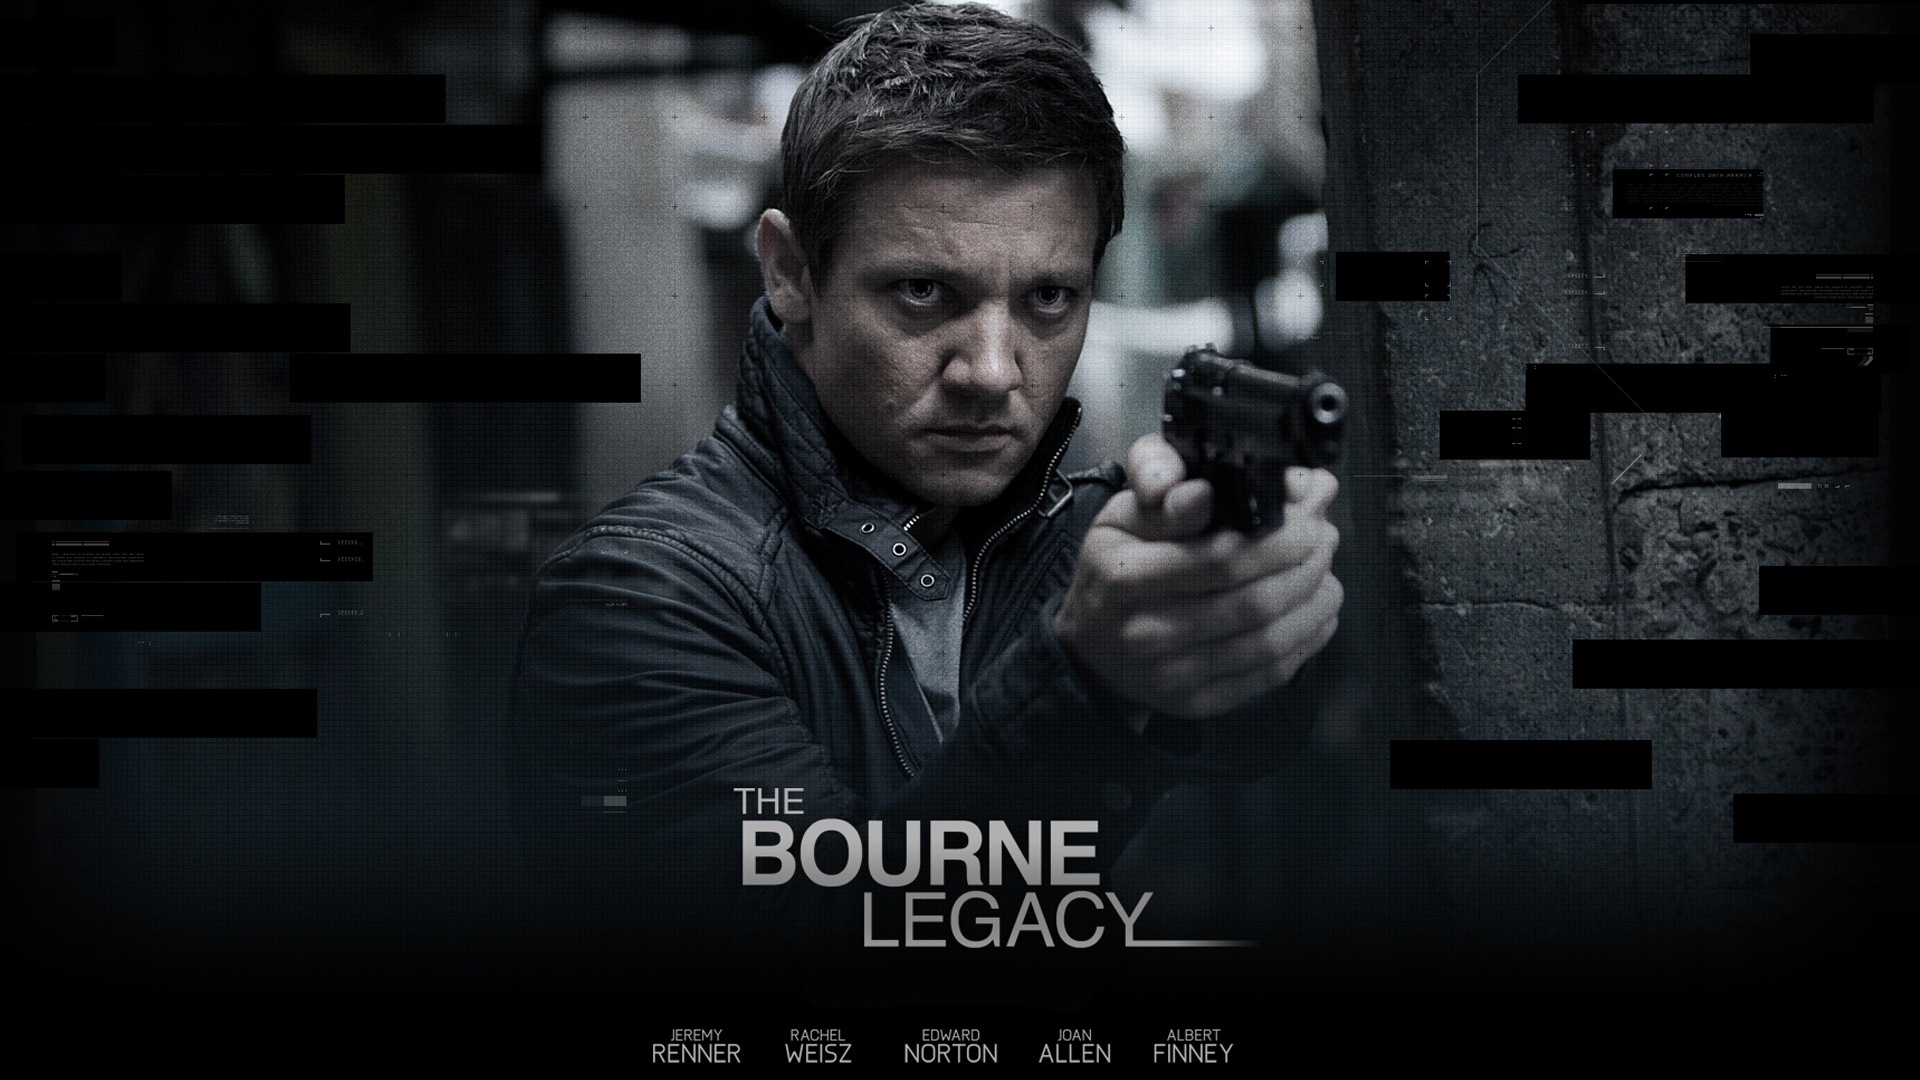 Die Bourne Legacy HD Wallpaper #2 - 1920x1080